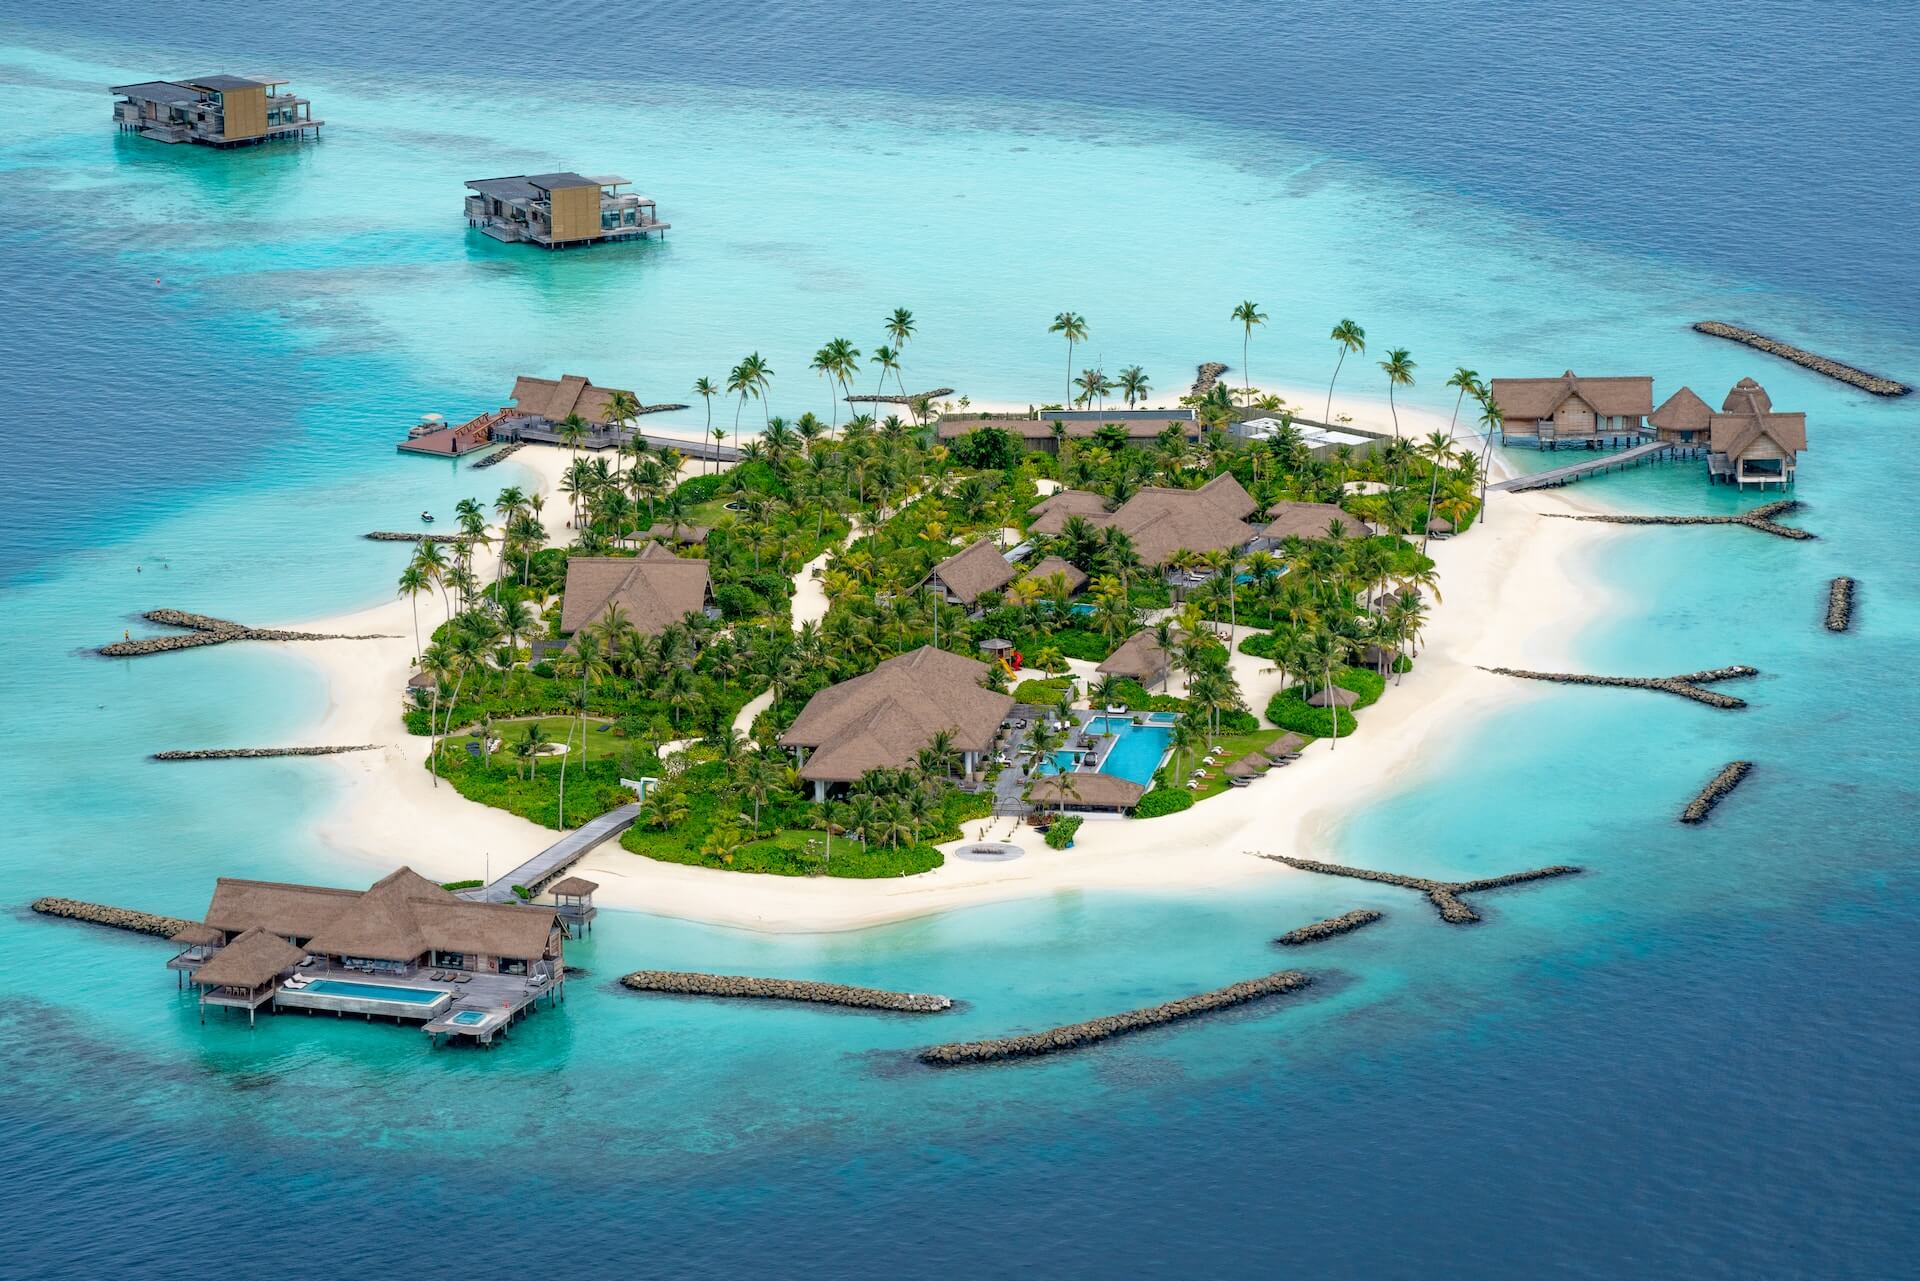 Voyages de Noces dans un hôtel de rêve aux maldives